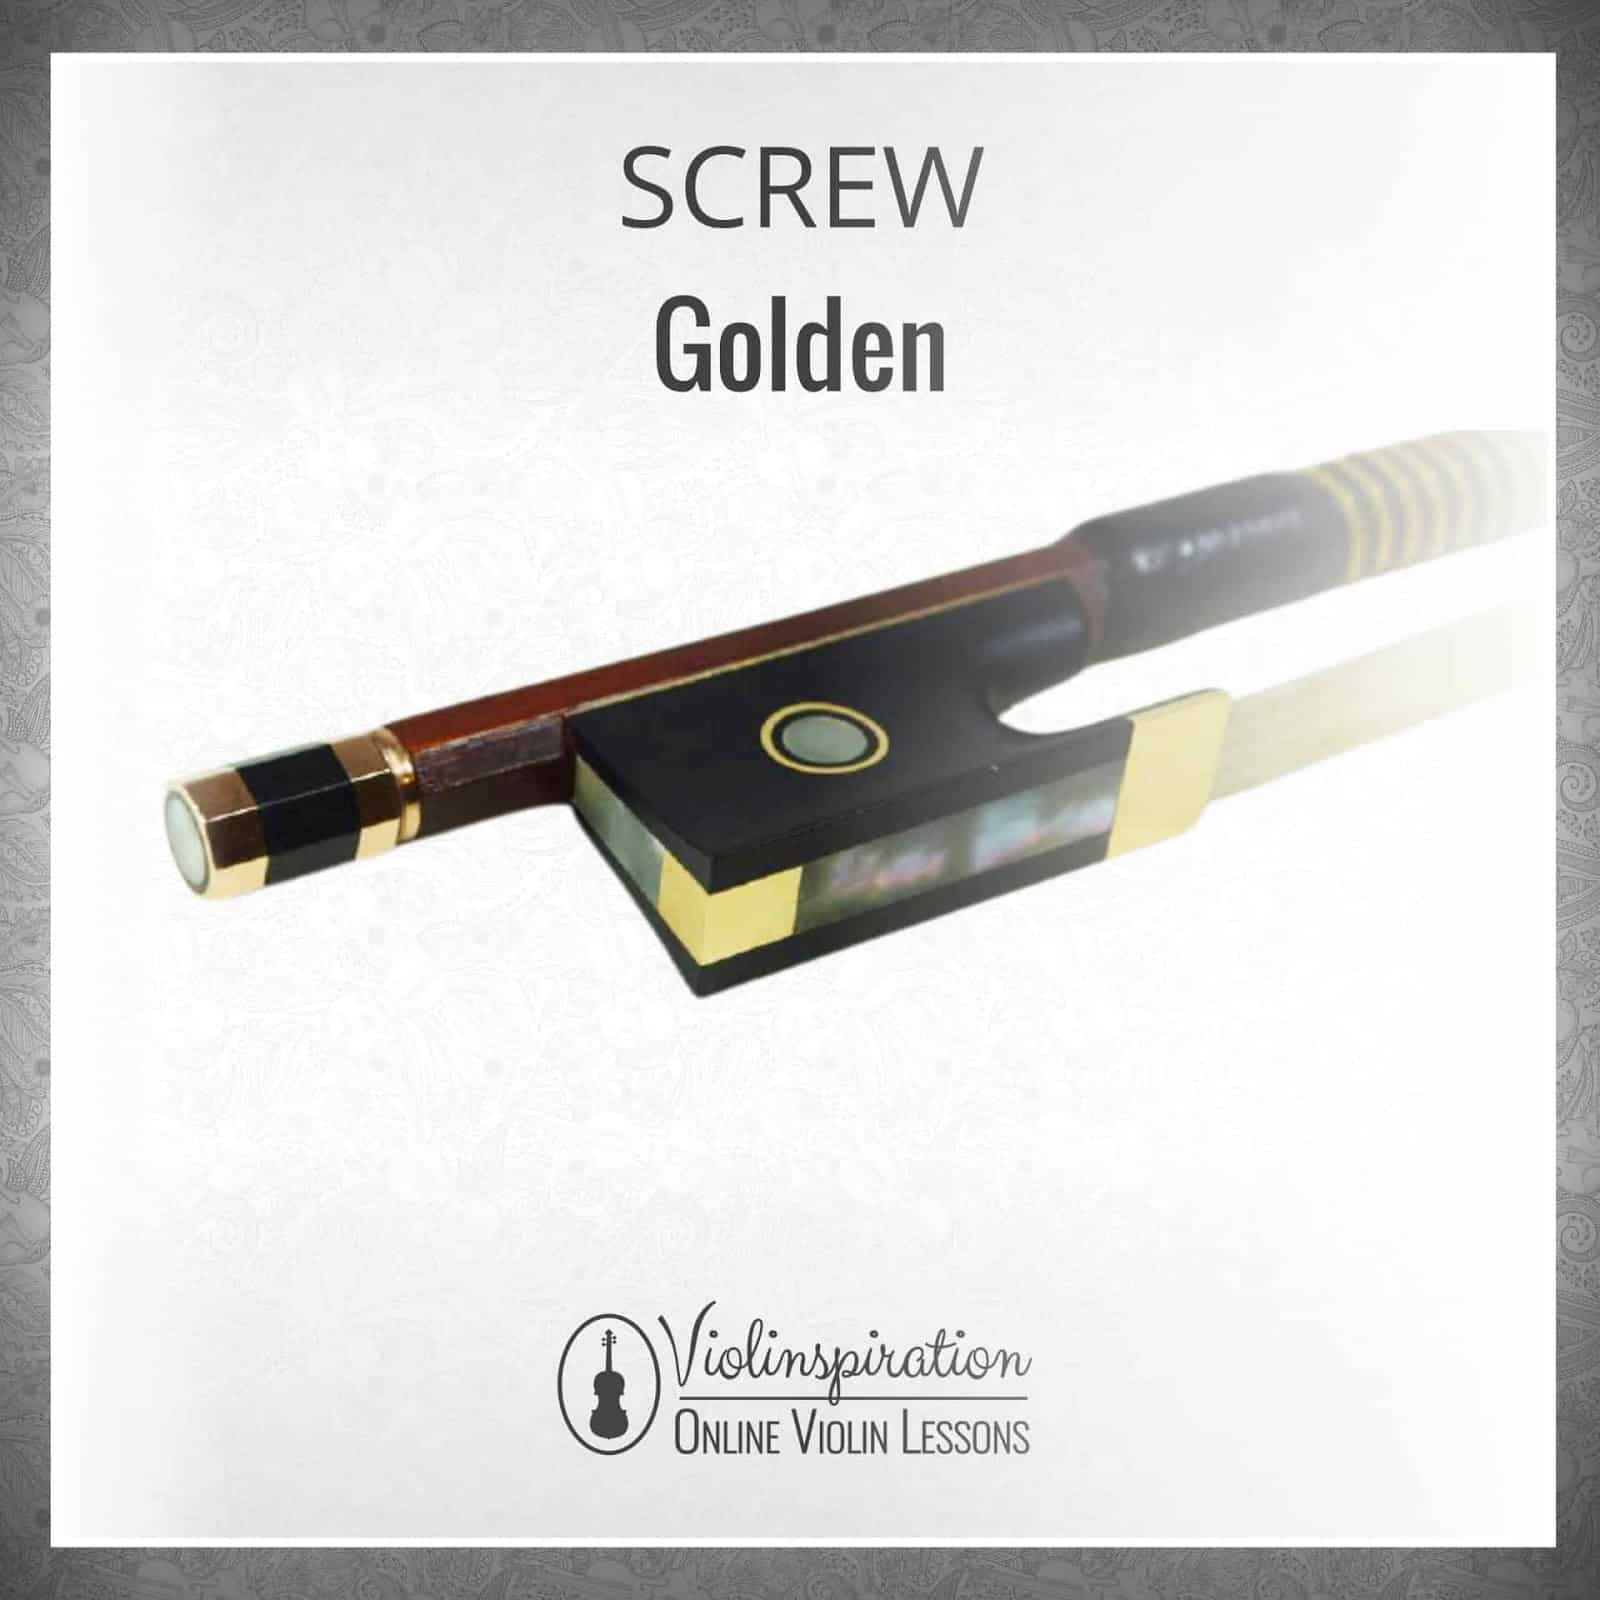 Violin Bow Materials - Golden Screw